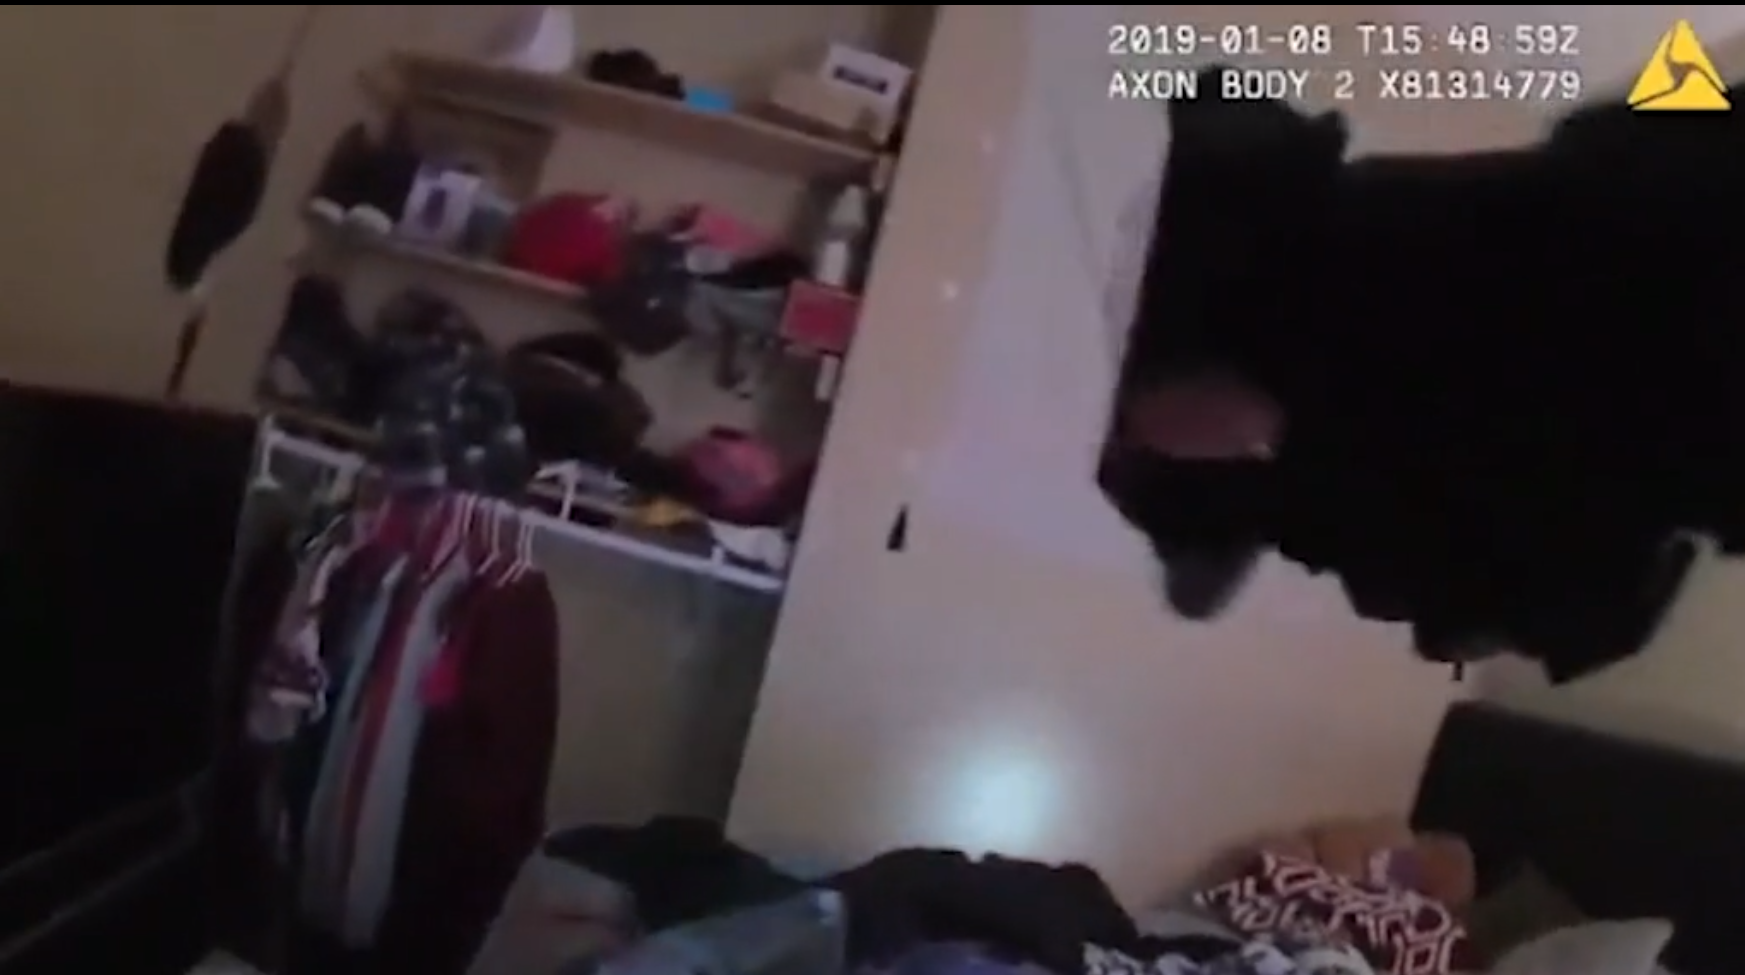 Los agentes armados registraron la vivienda (Foto: Video Departamento de Policía de Lafayette)